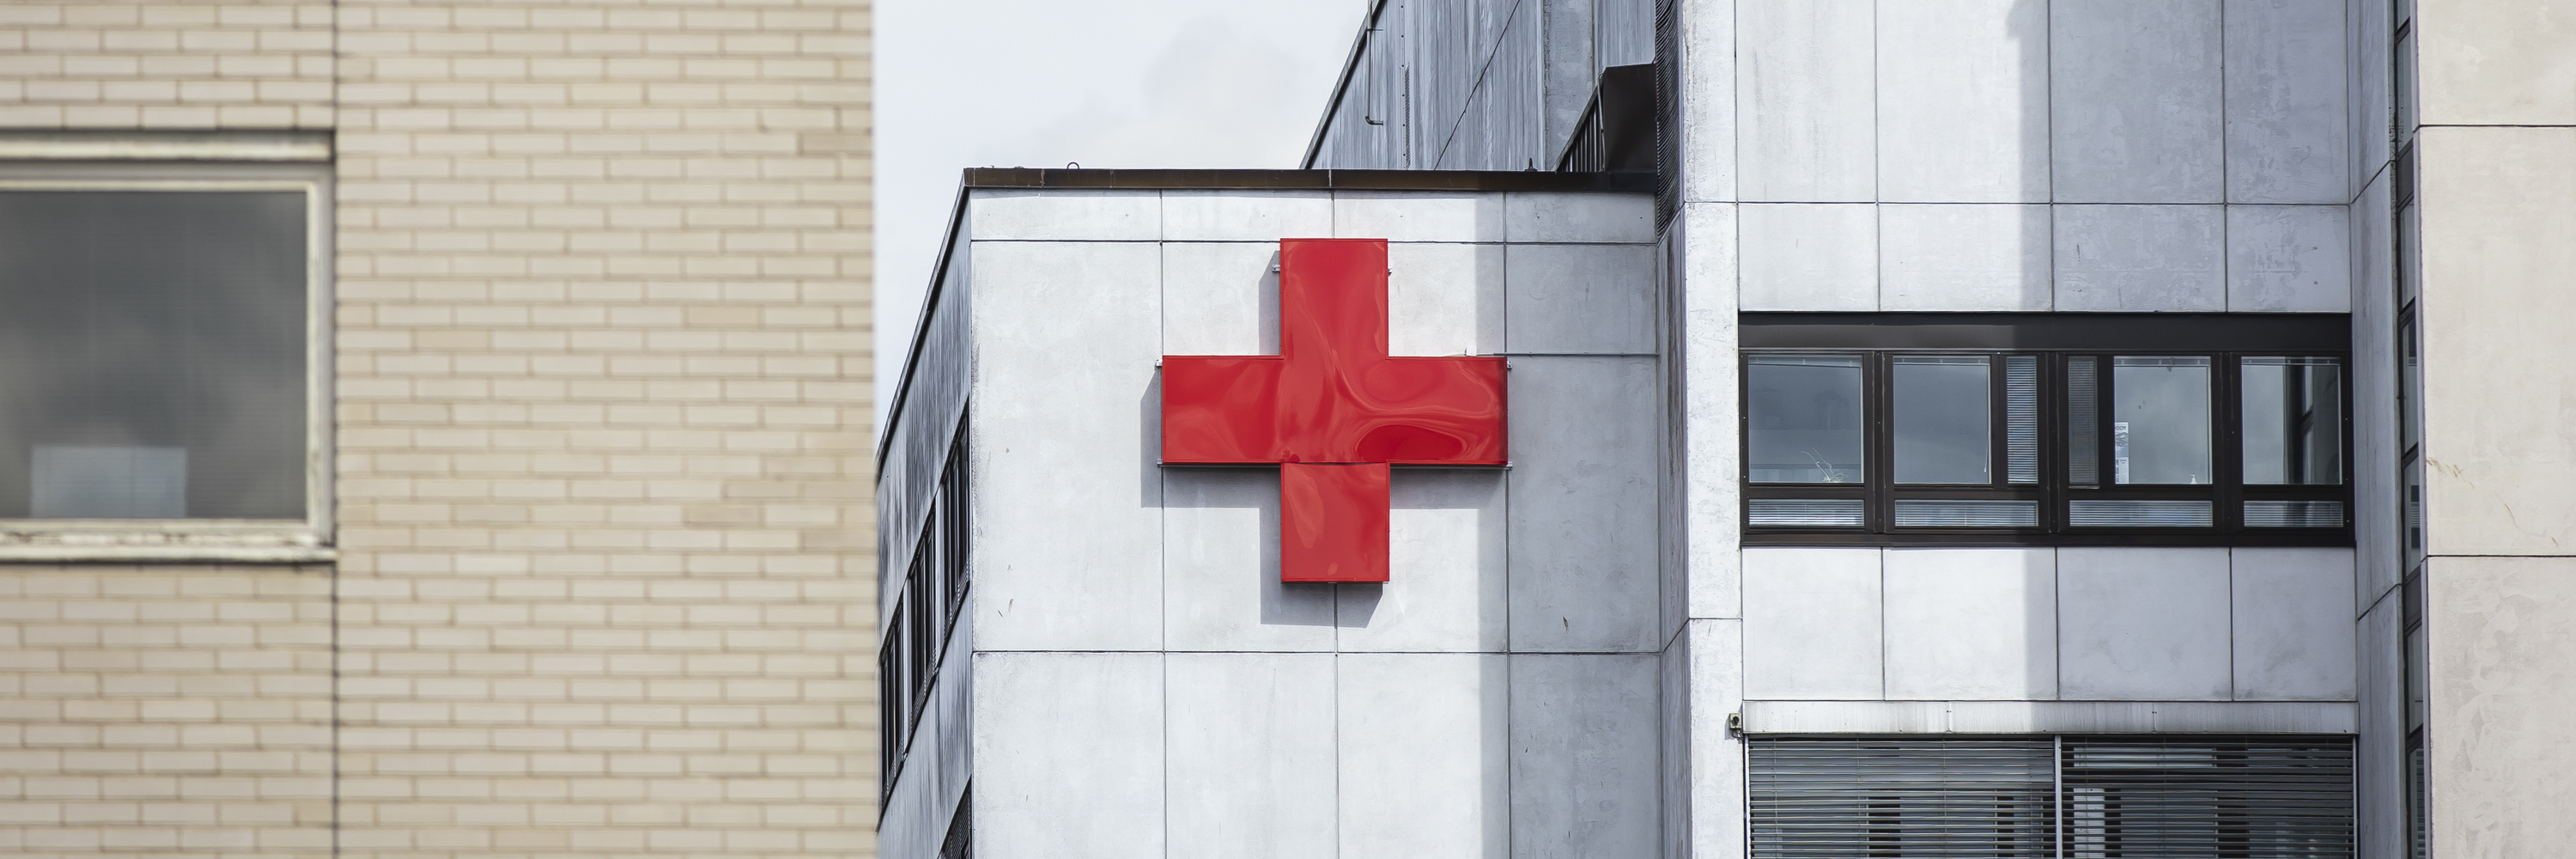 En sjukhusbyggnad med ett rött kors på väggen.